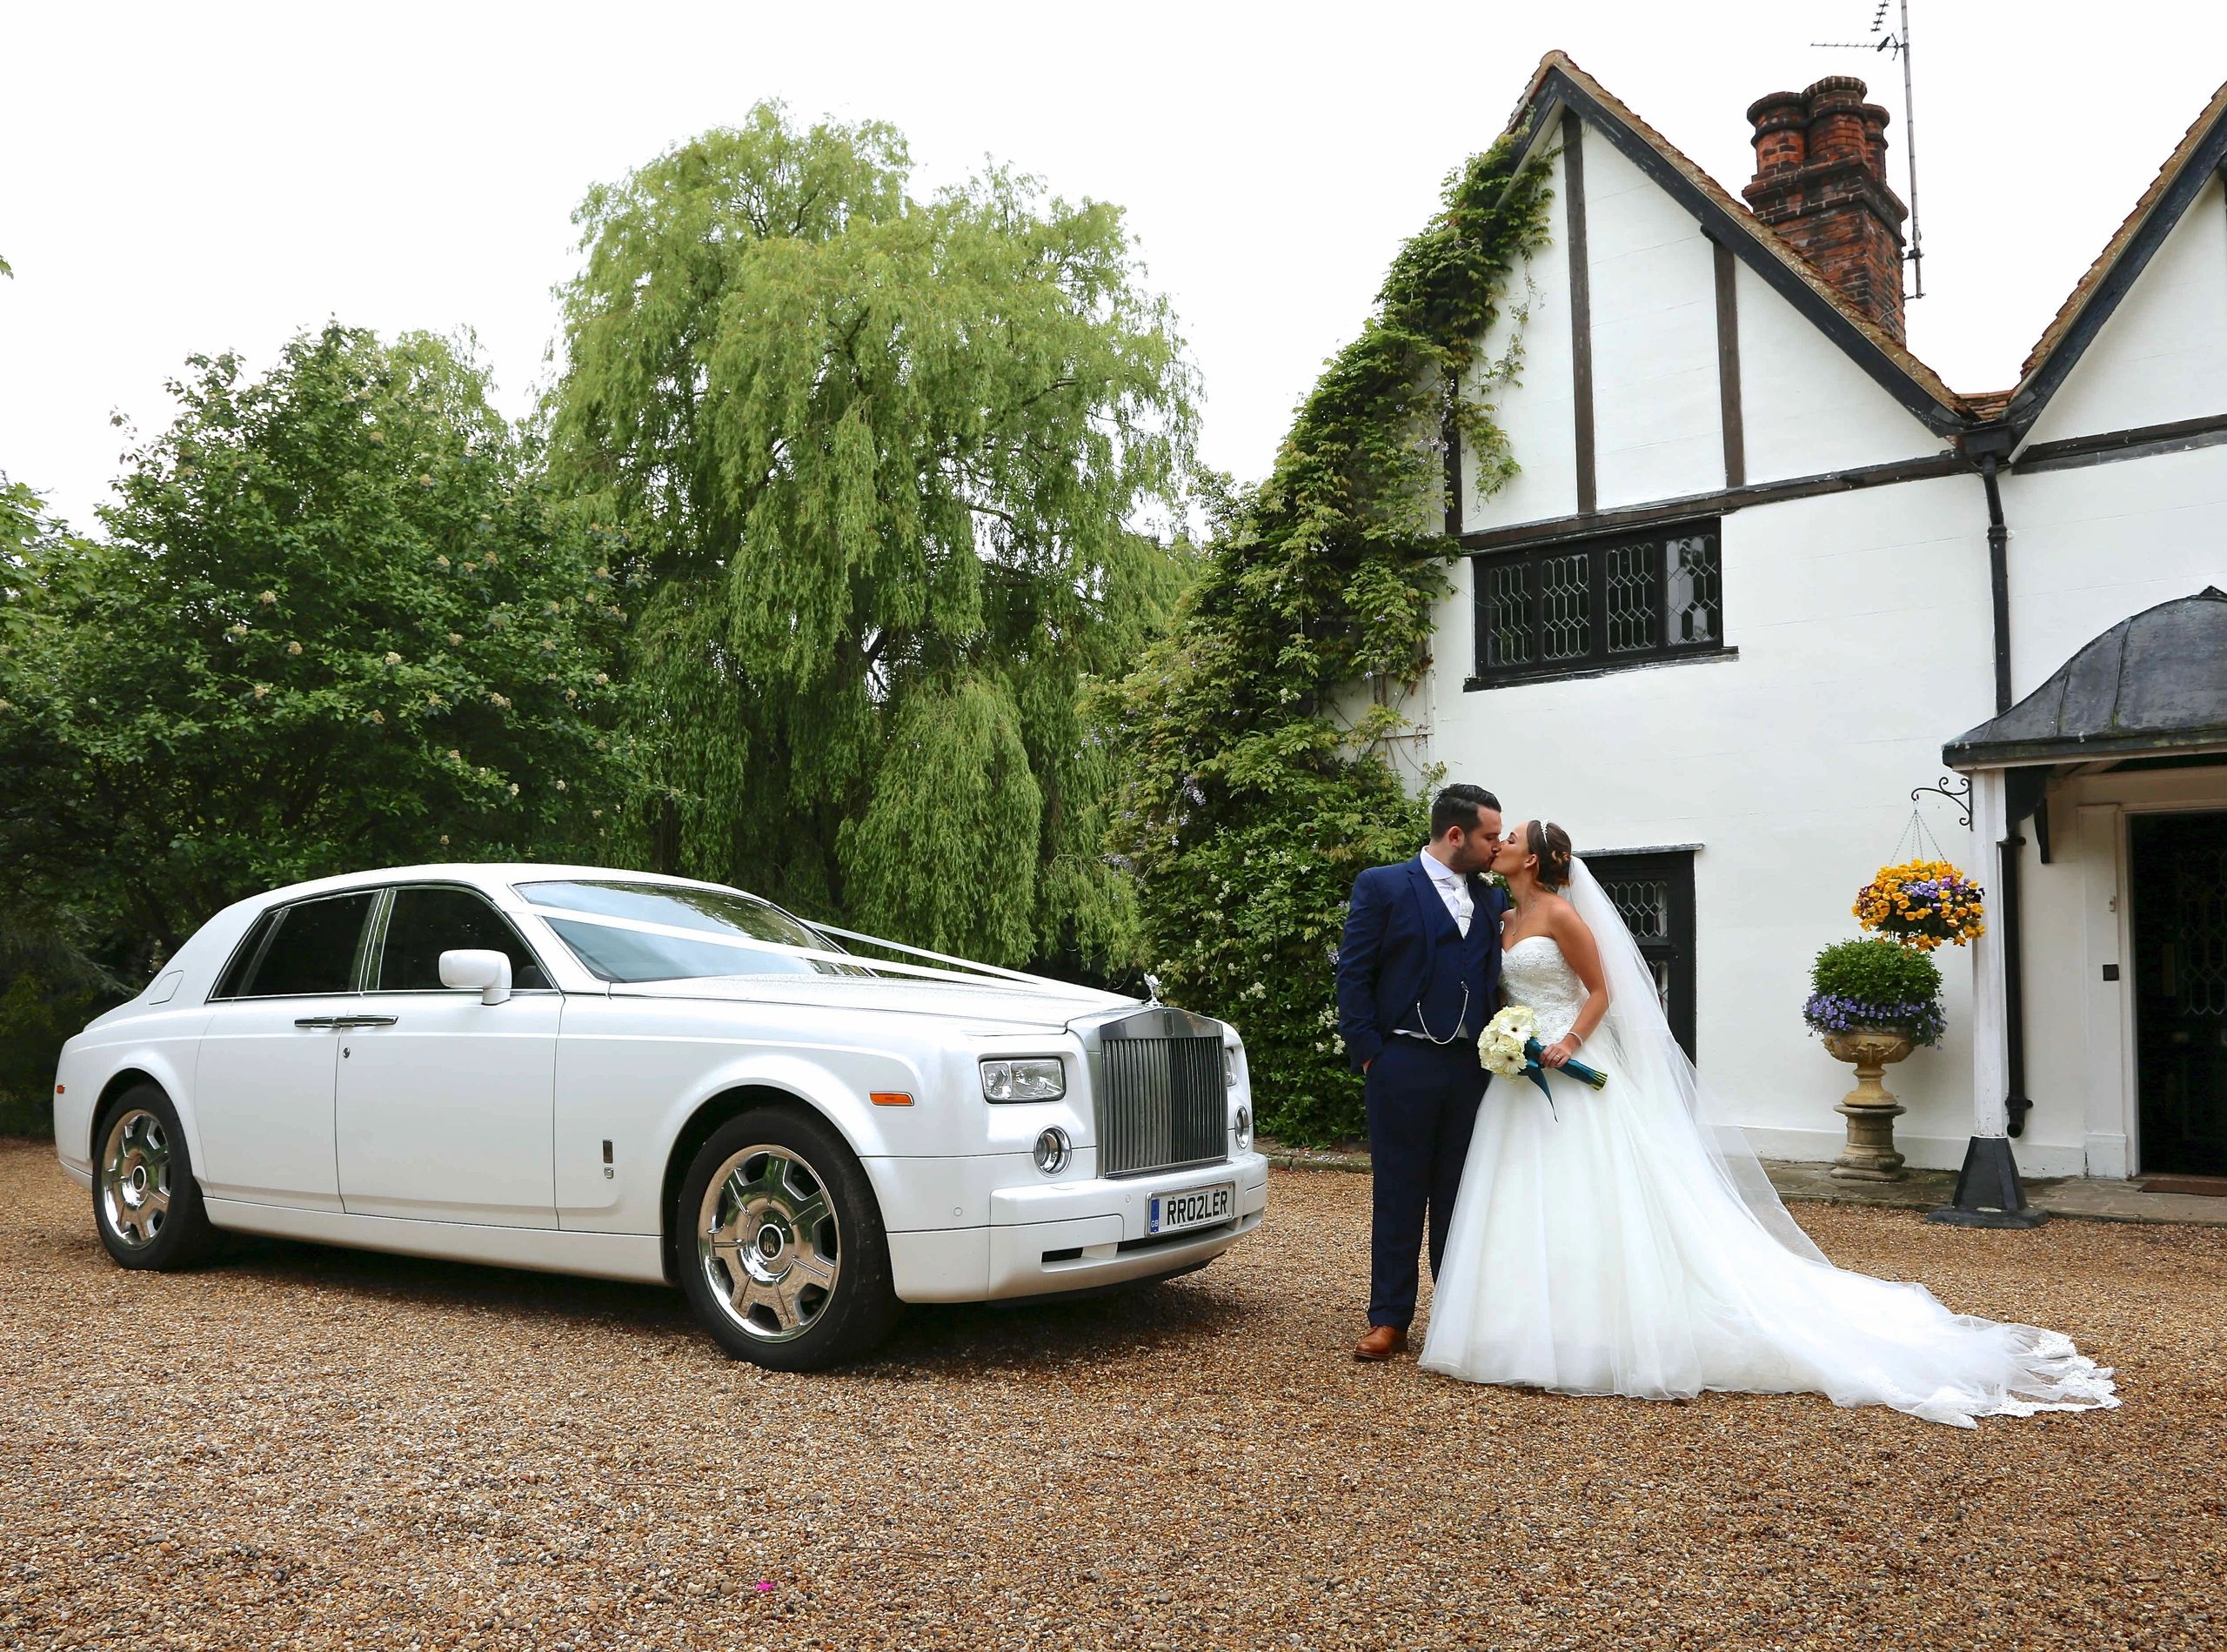 Essex Wedding Car Hire - Phantom Hire, Essex